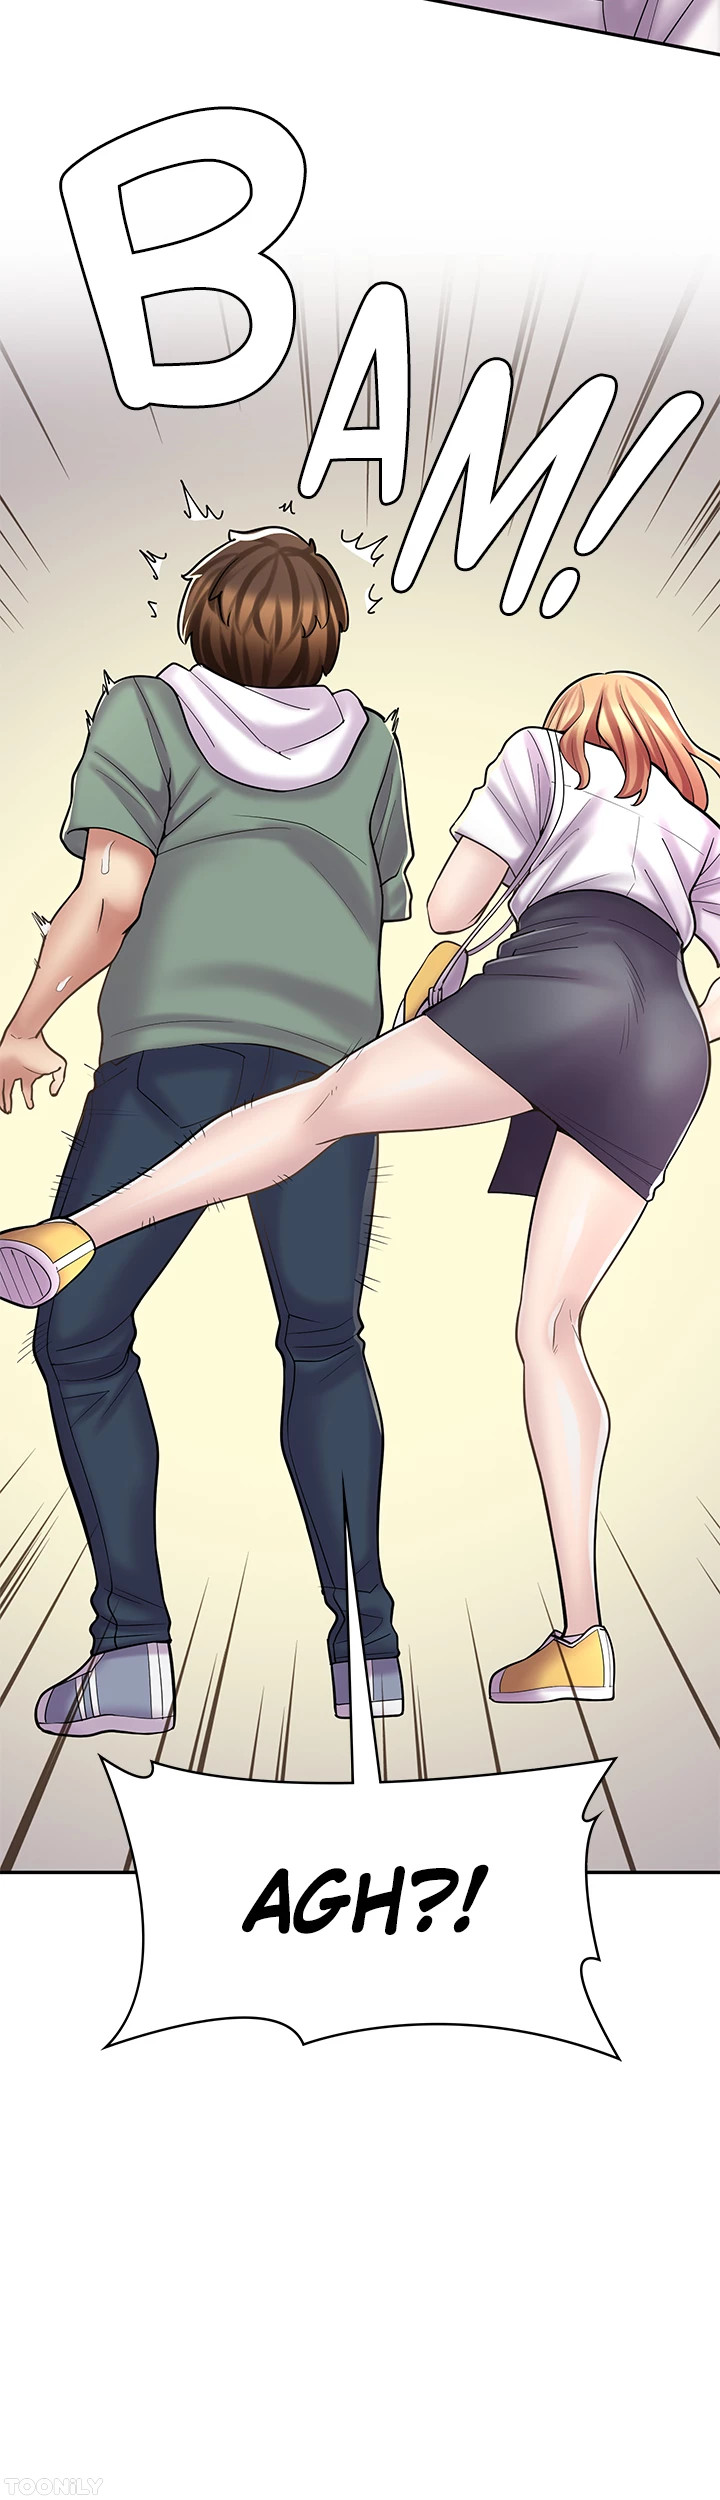 The image Erotic Manga Café Girls - Chapter 21 - 445dbd4ef9c4825917 - ManhwaManga.io